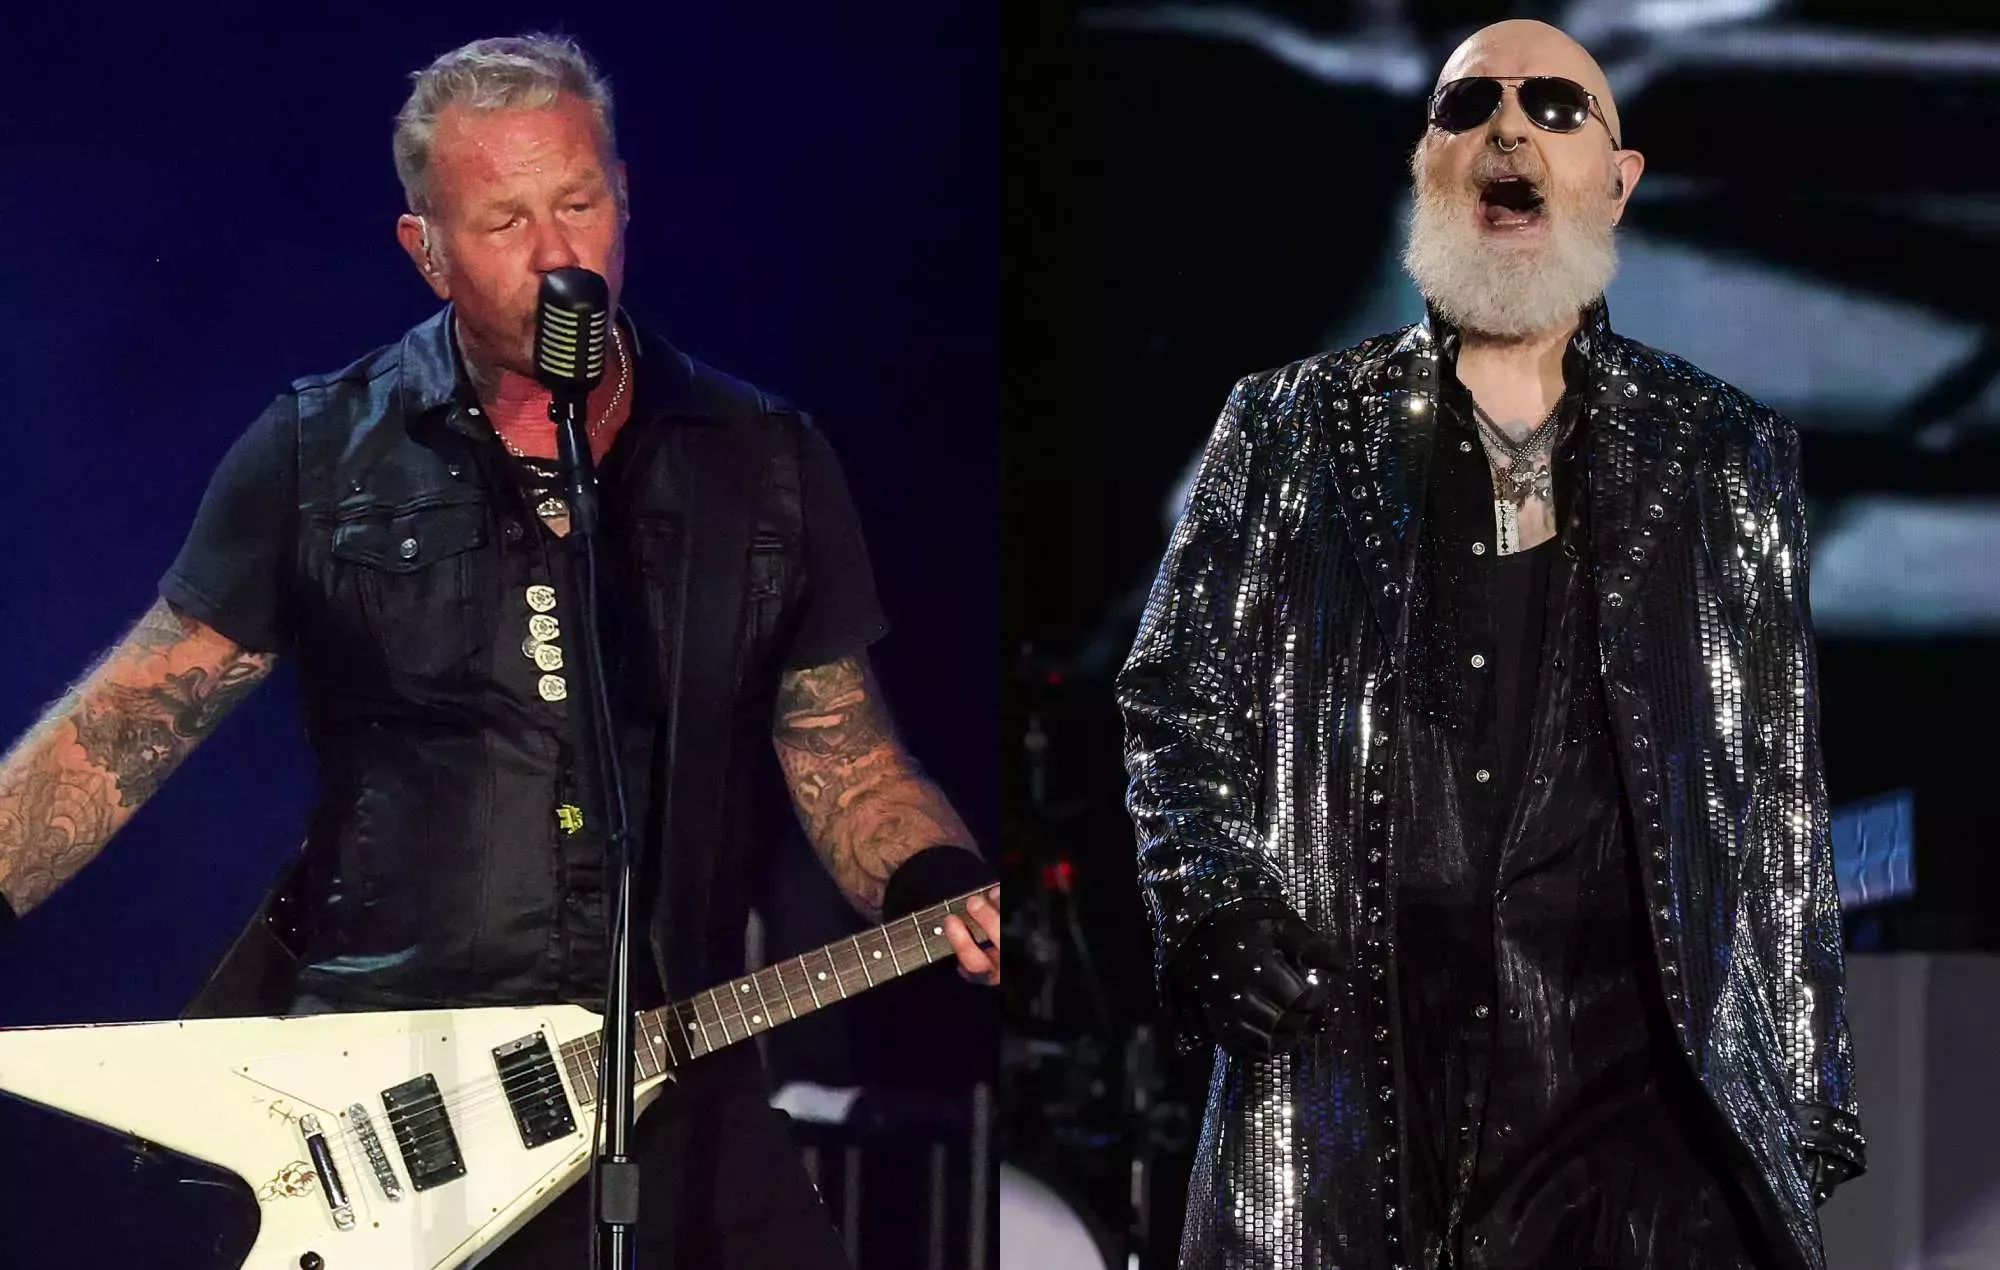 Las imágenes de Metallica rockeando al ritmo de Judas Priest en el festival Power Trip se hacen virales